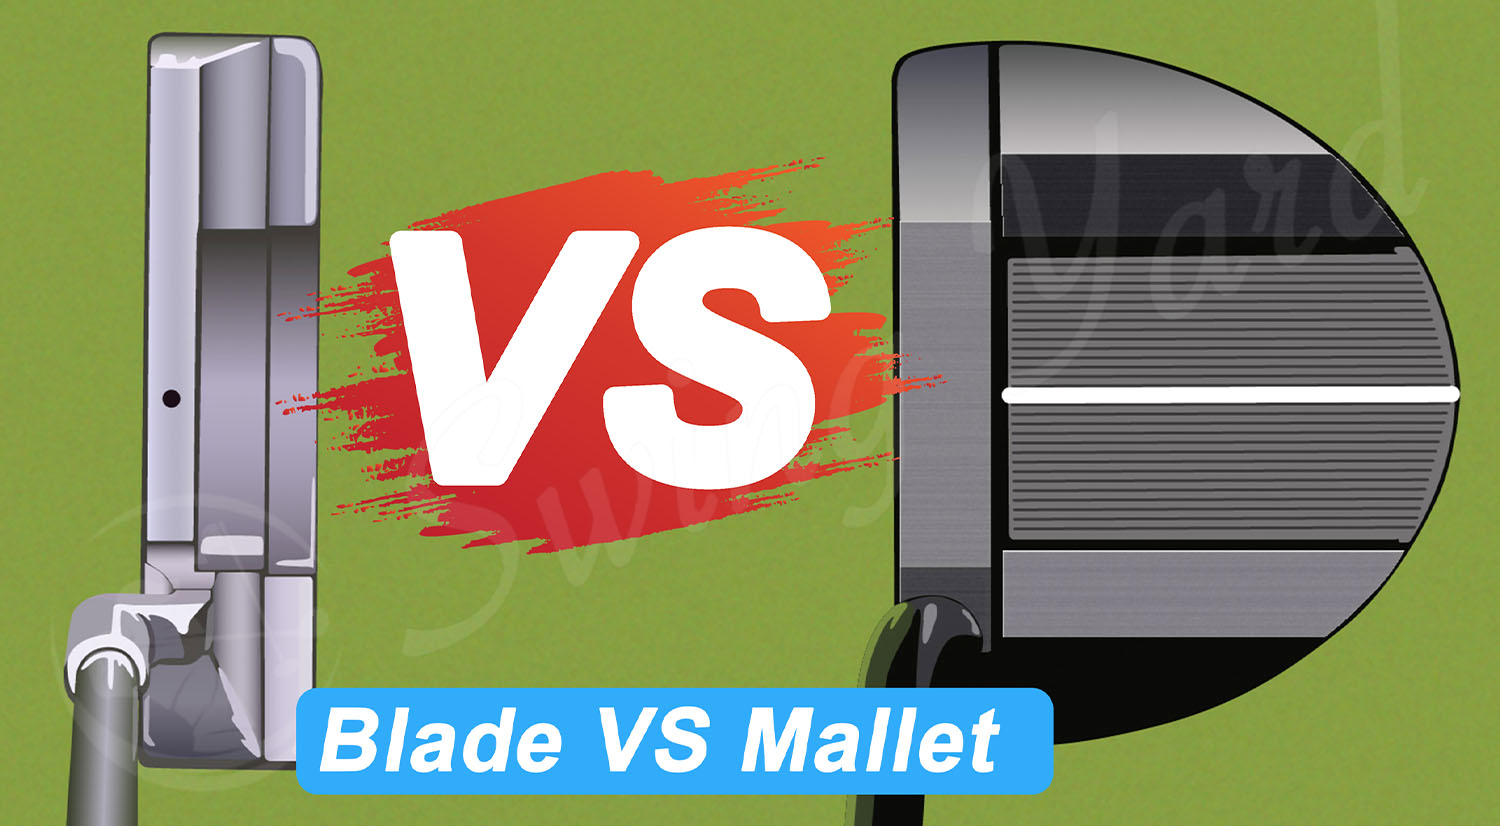 Blade vs mallet putter